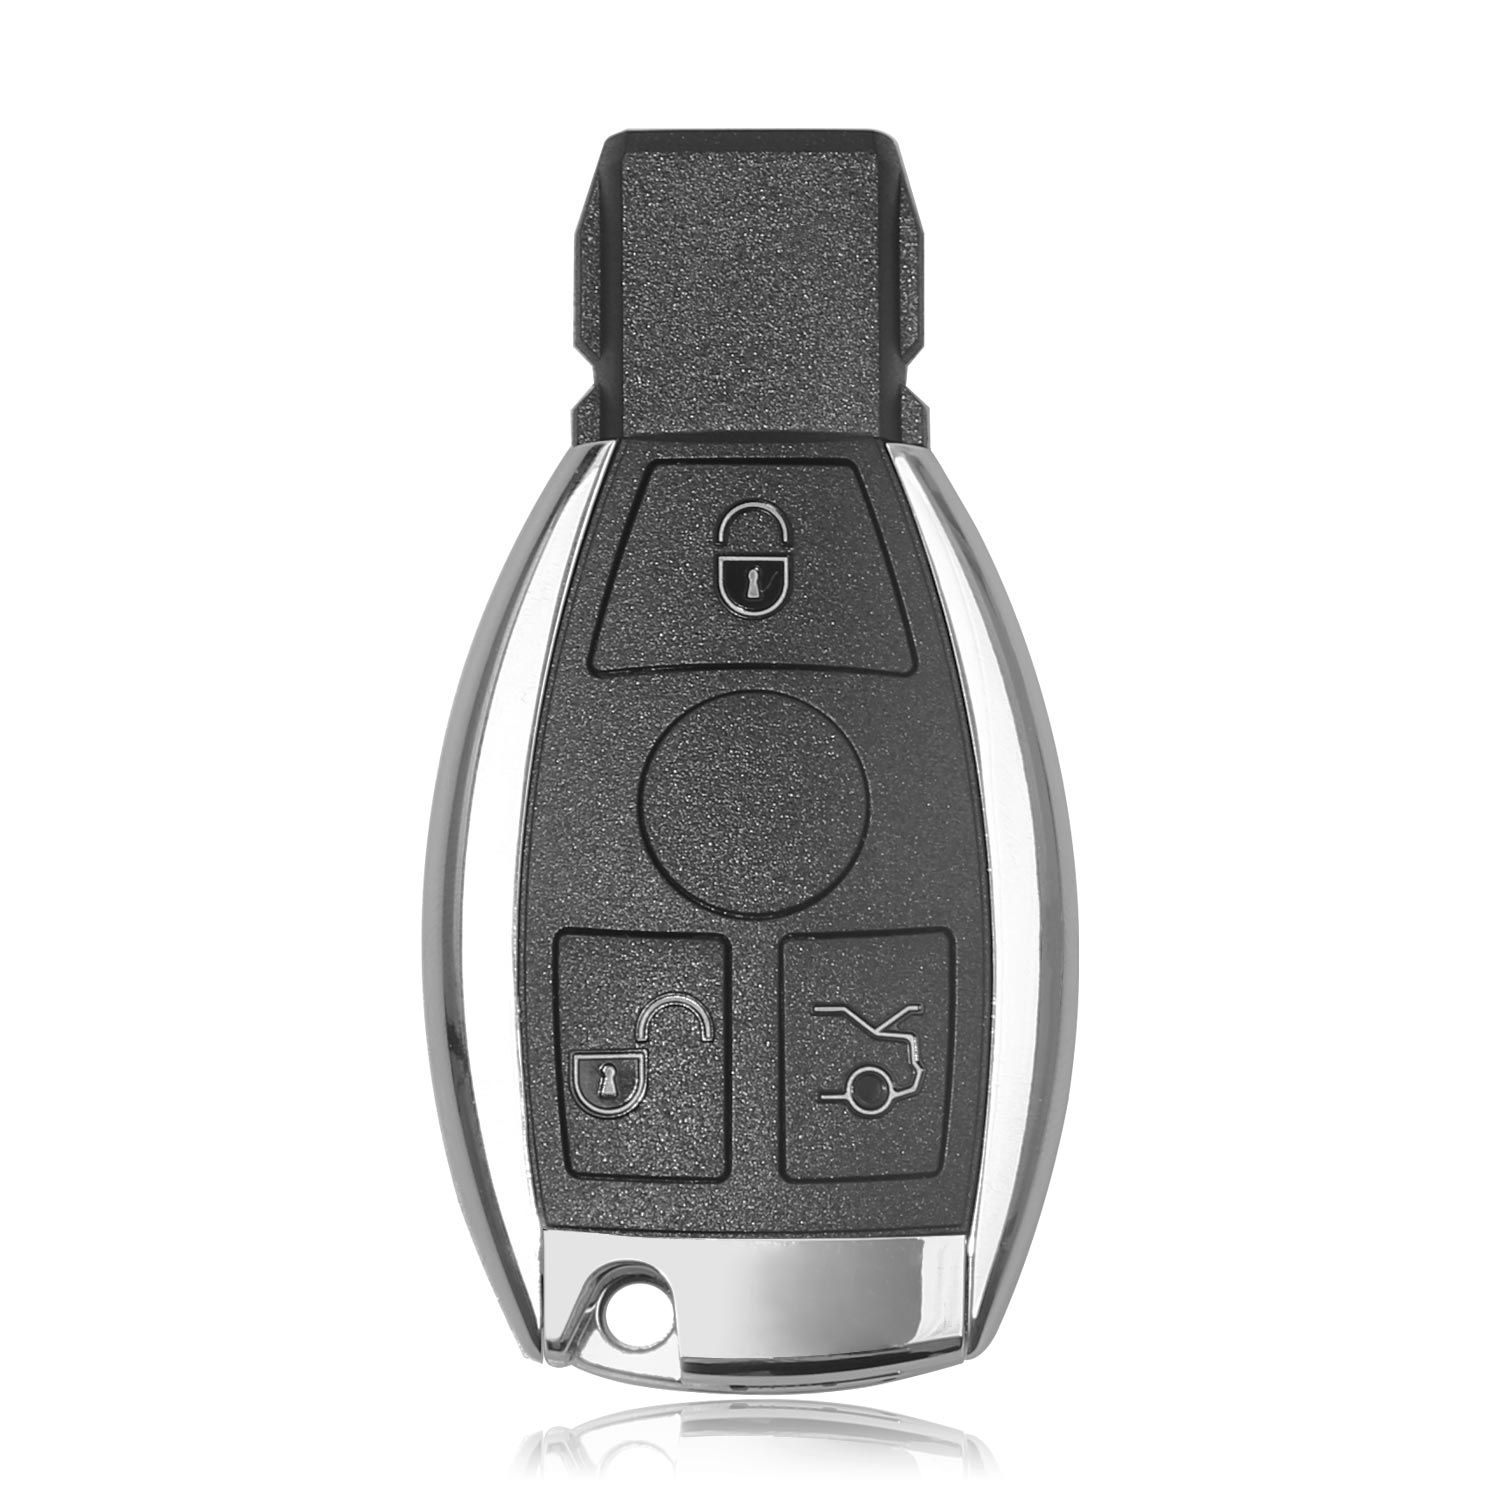 10 xhorse vvdi be Key pro SMART Key Shell Mercedes - Benz 3 botones reciben 10 tokens gratuitos de la herramienta vvdi MB